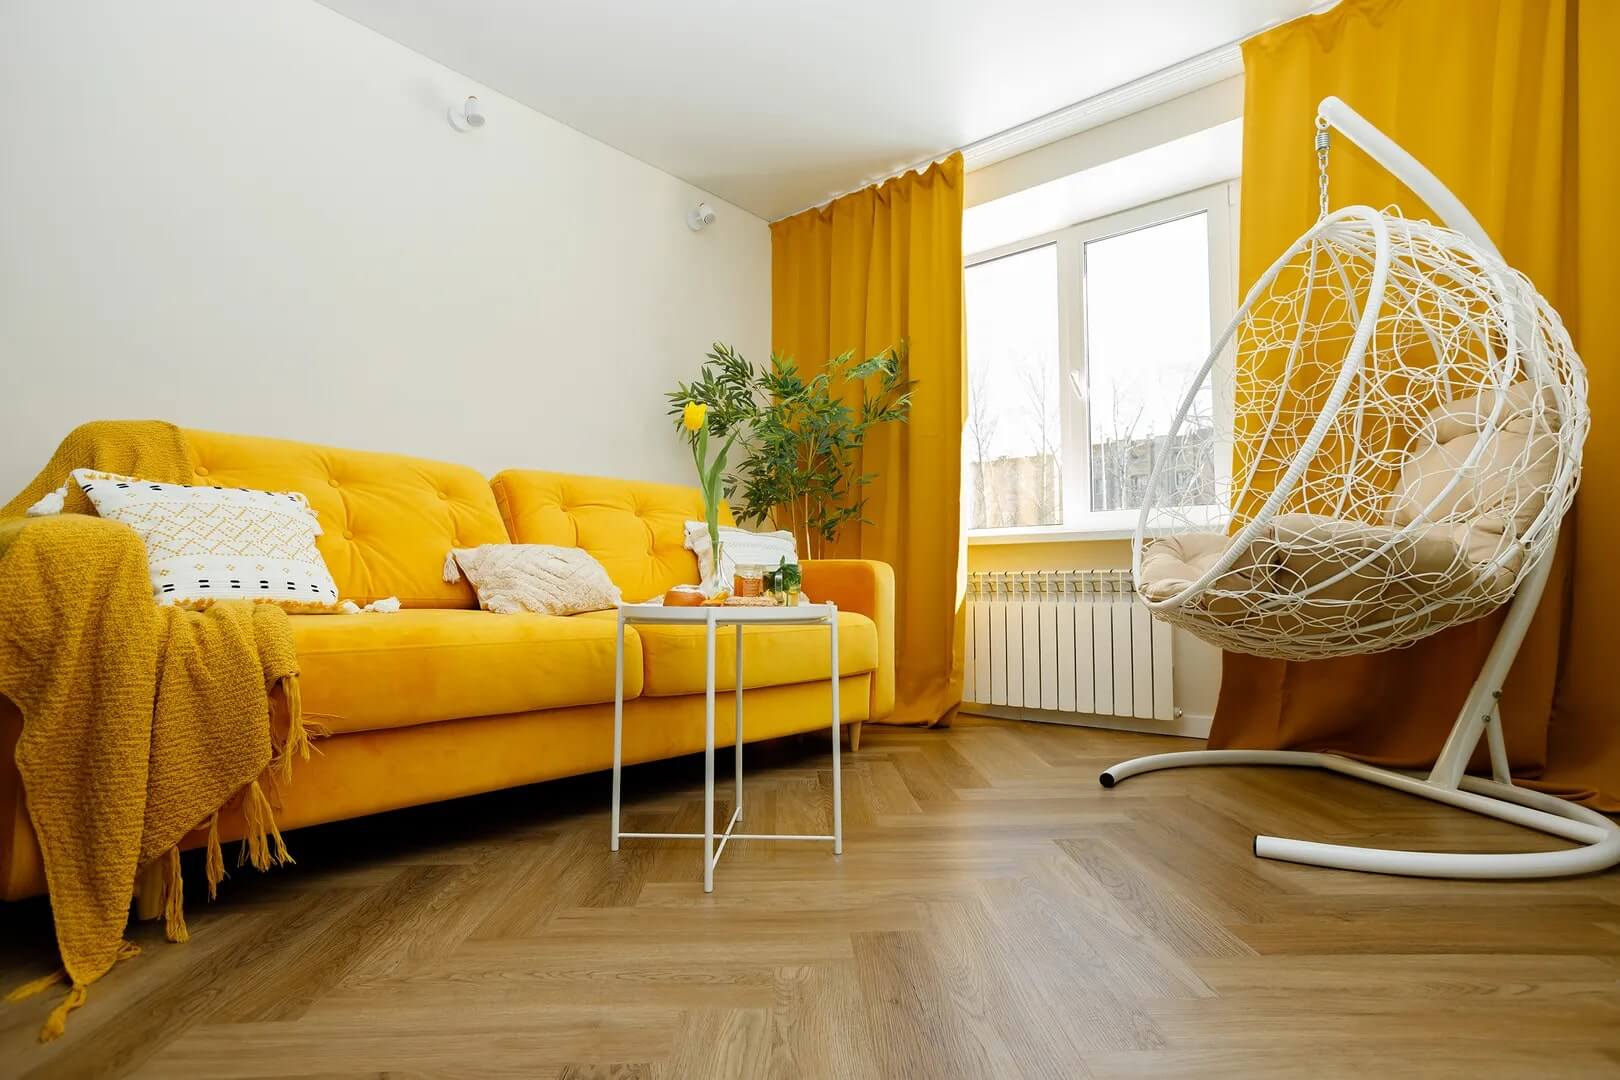 В интерьере использованы яркие желтые элементы и предметы мебели.